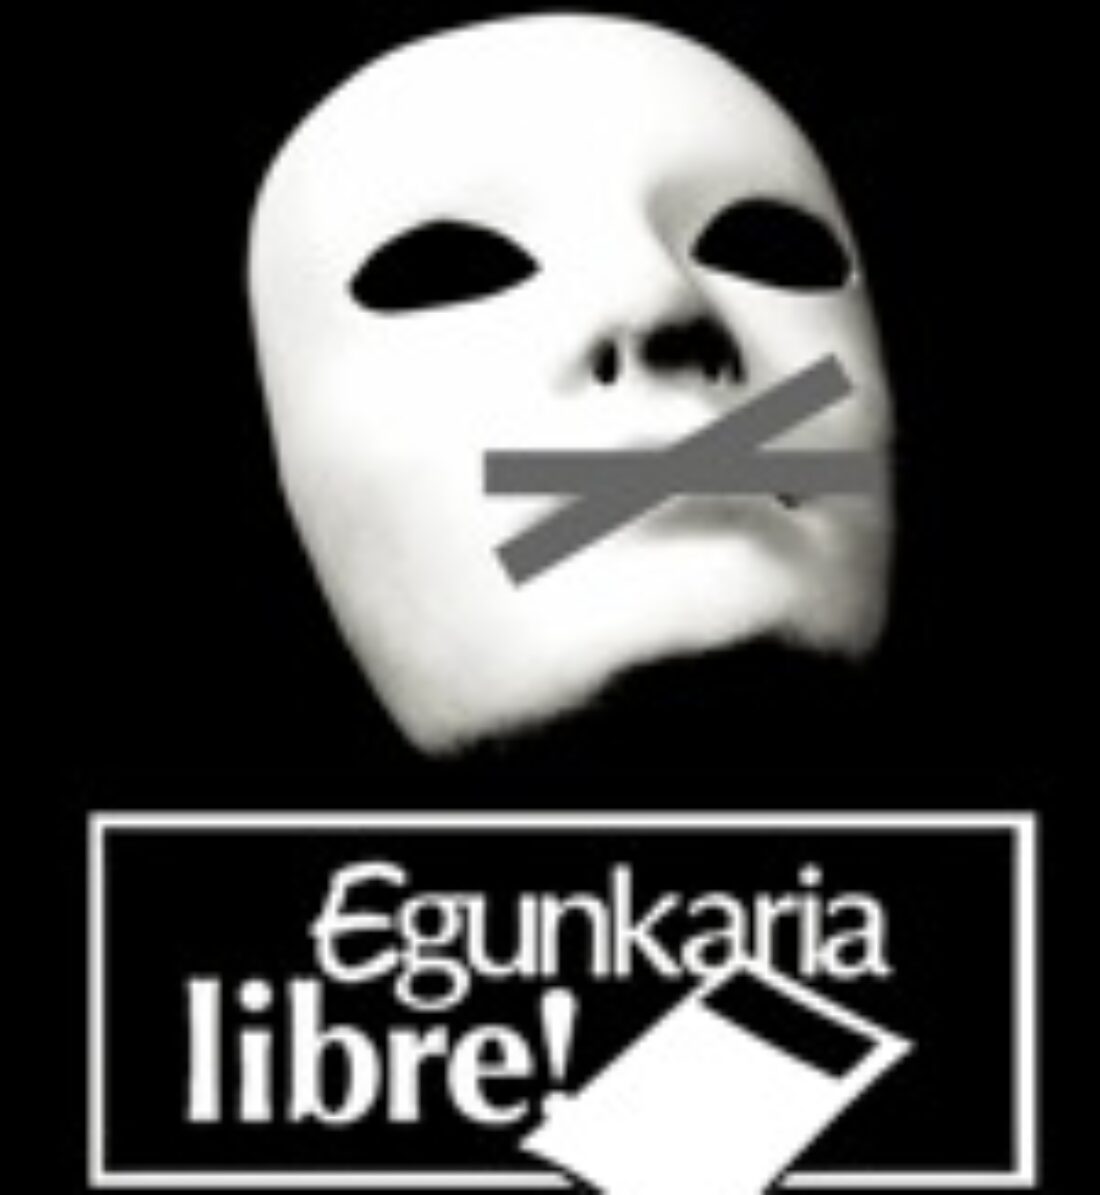 23 enero, Madrid : Acto solidario «Egunkaria libre»